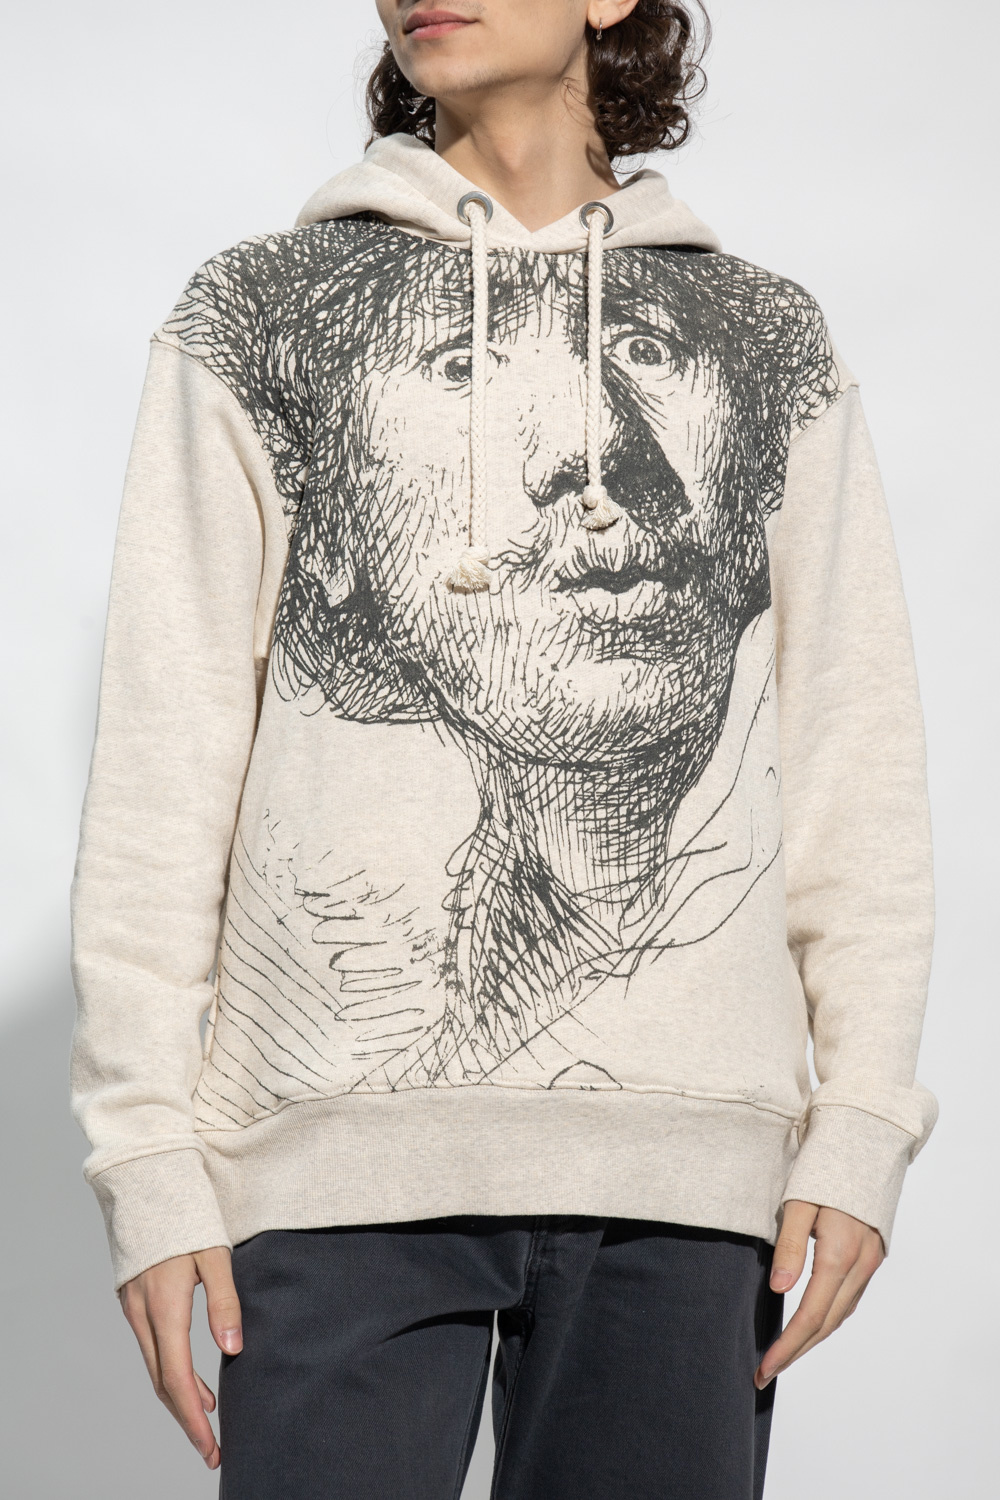 JW Anderson Printed hoodie